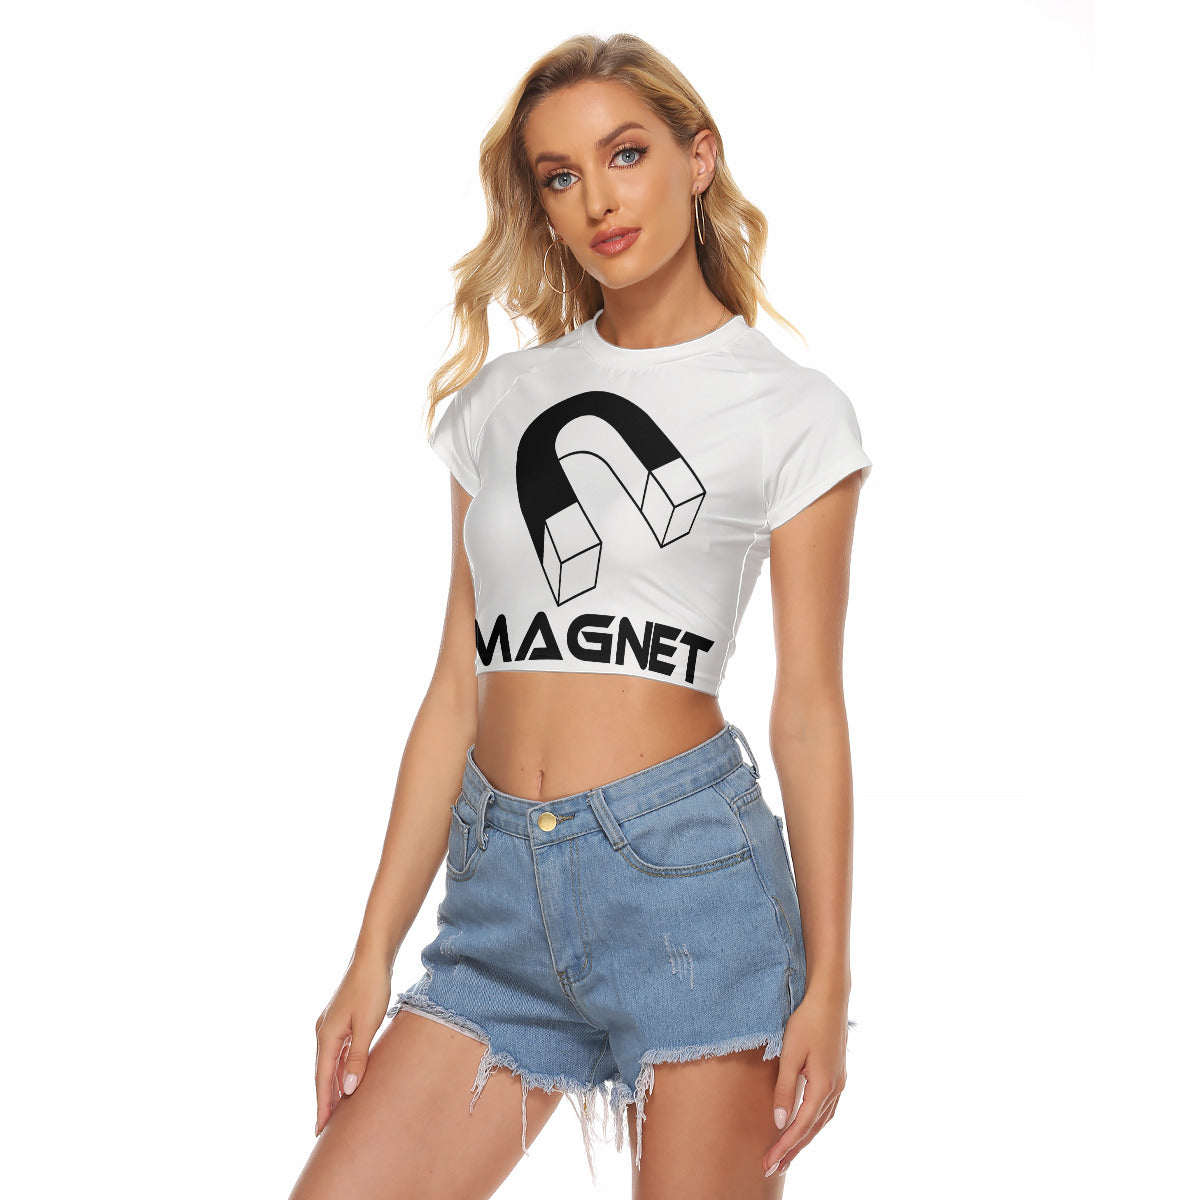 Magnet Women's Raglan Cropped T-shirt